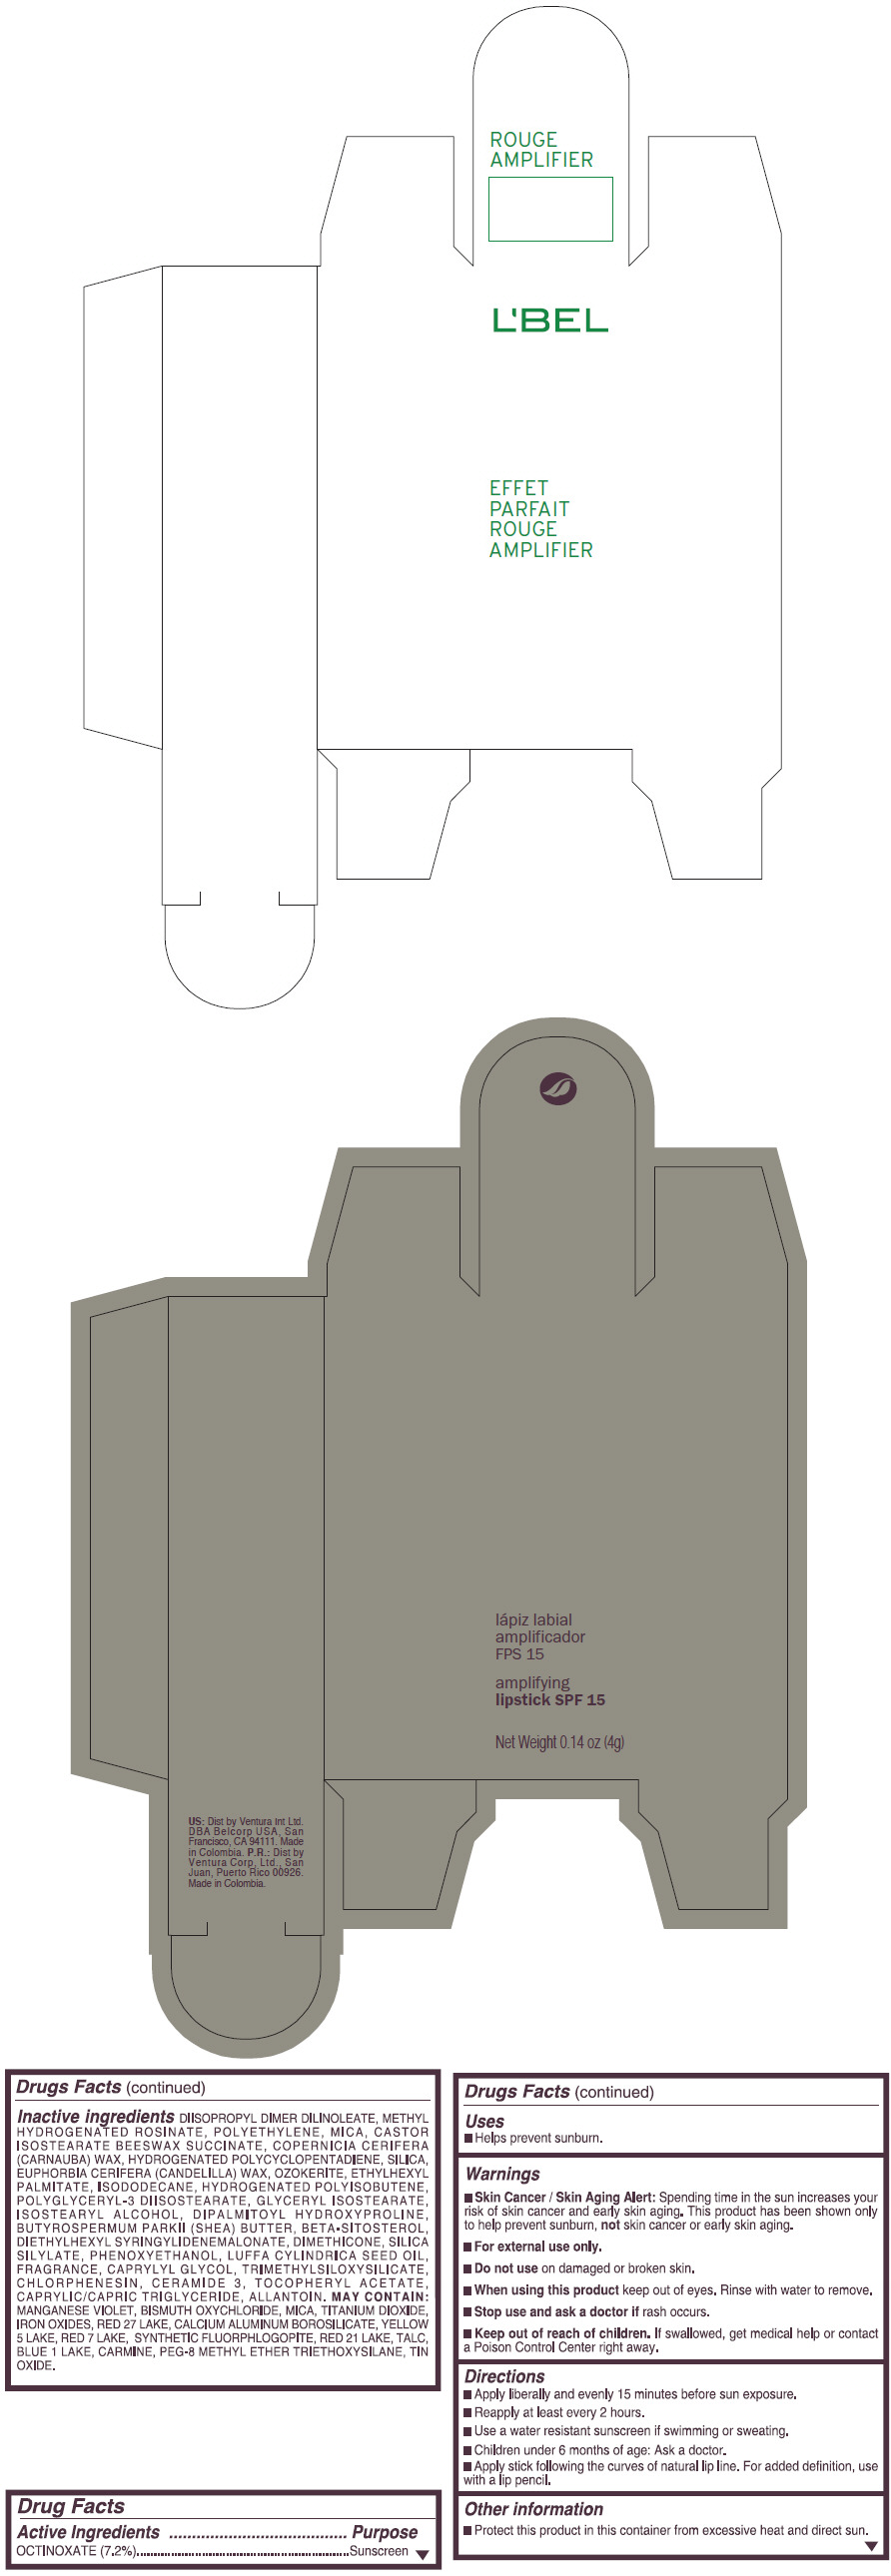 PRINCIPAL DISPLAY PANEL - 4 g Tube Box - (FUCSIA SPLENDIDE) - PINK